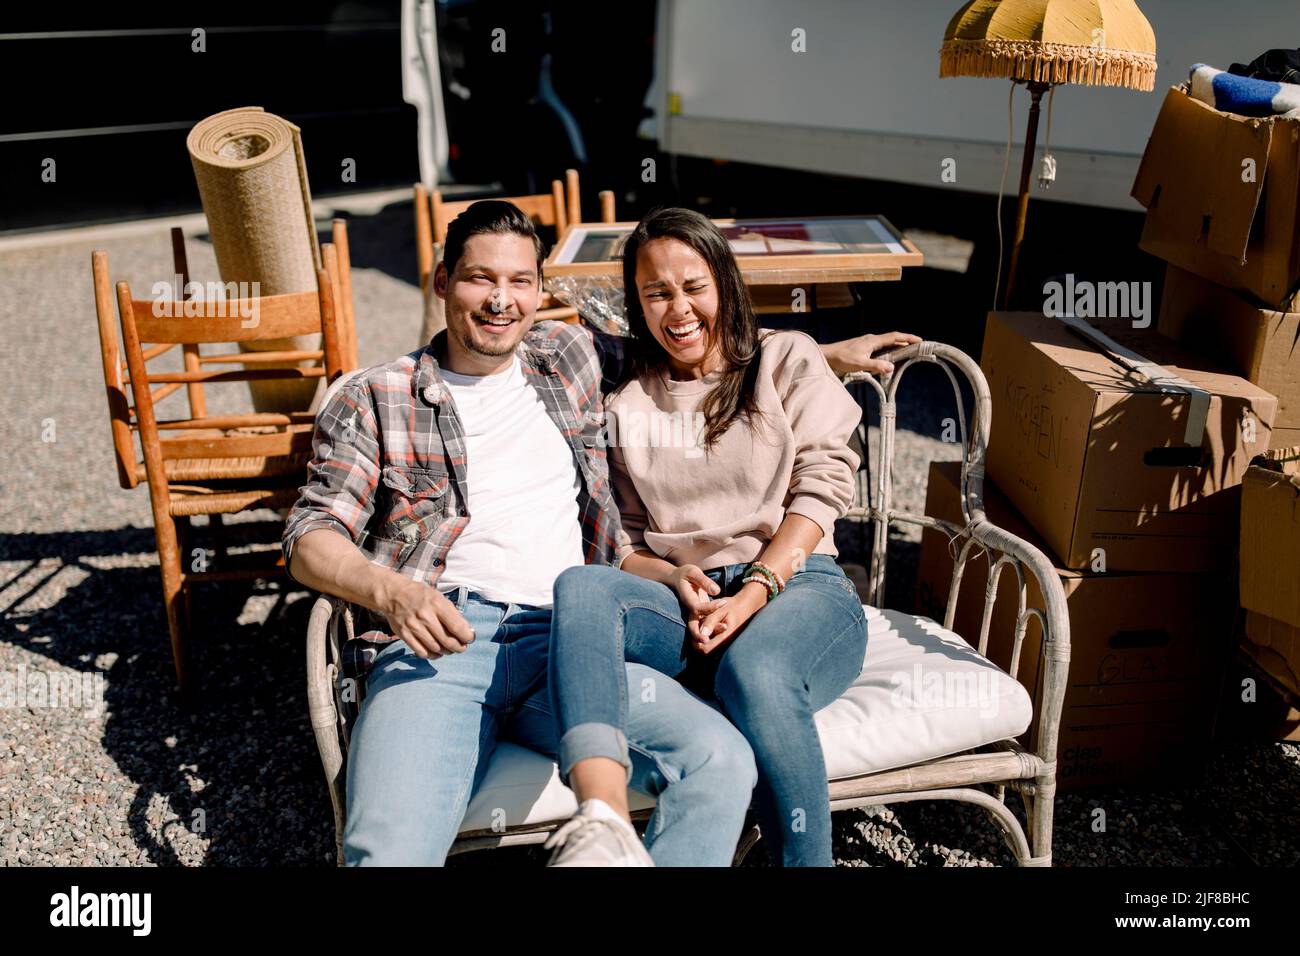 Retrato de una pareja sonriente sentada en una silla durante un día soleado Foto de stock